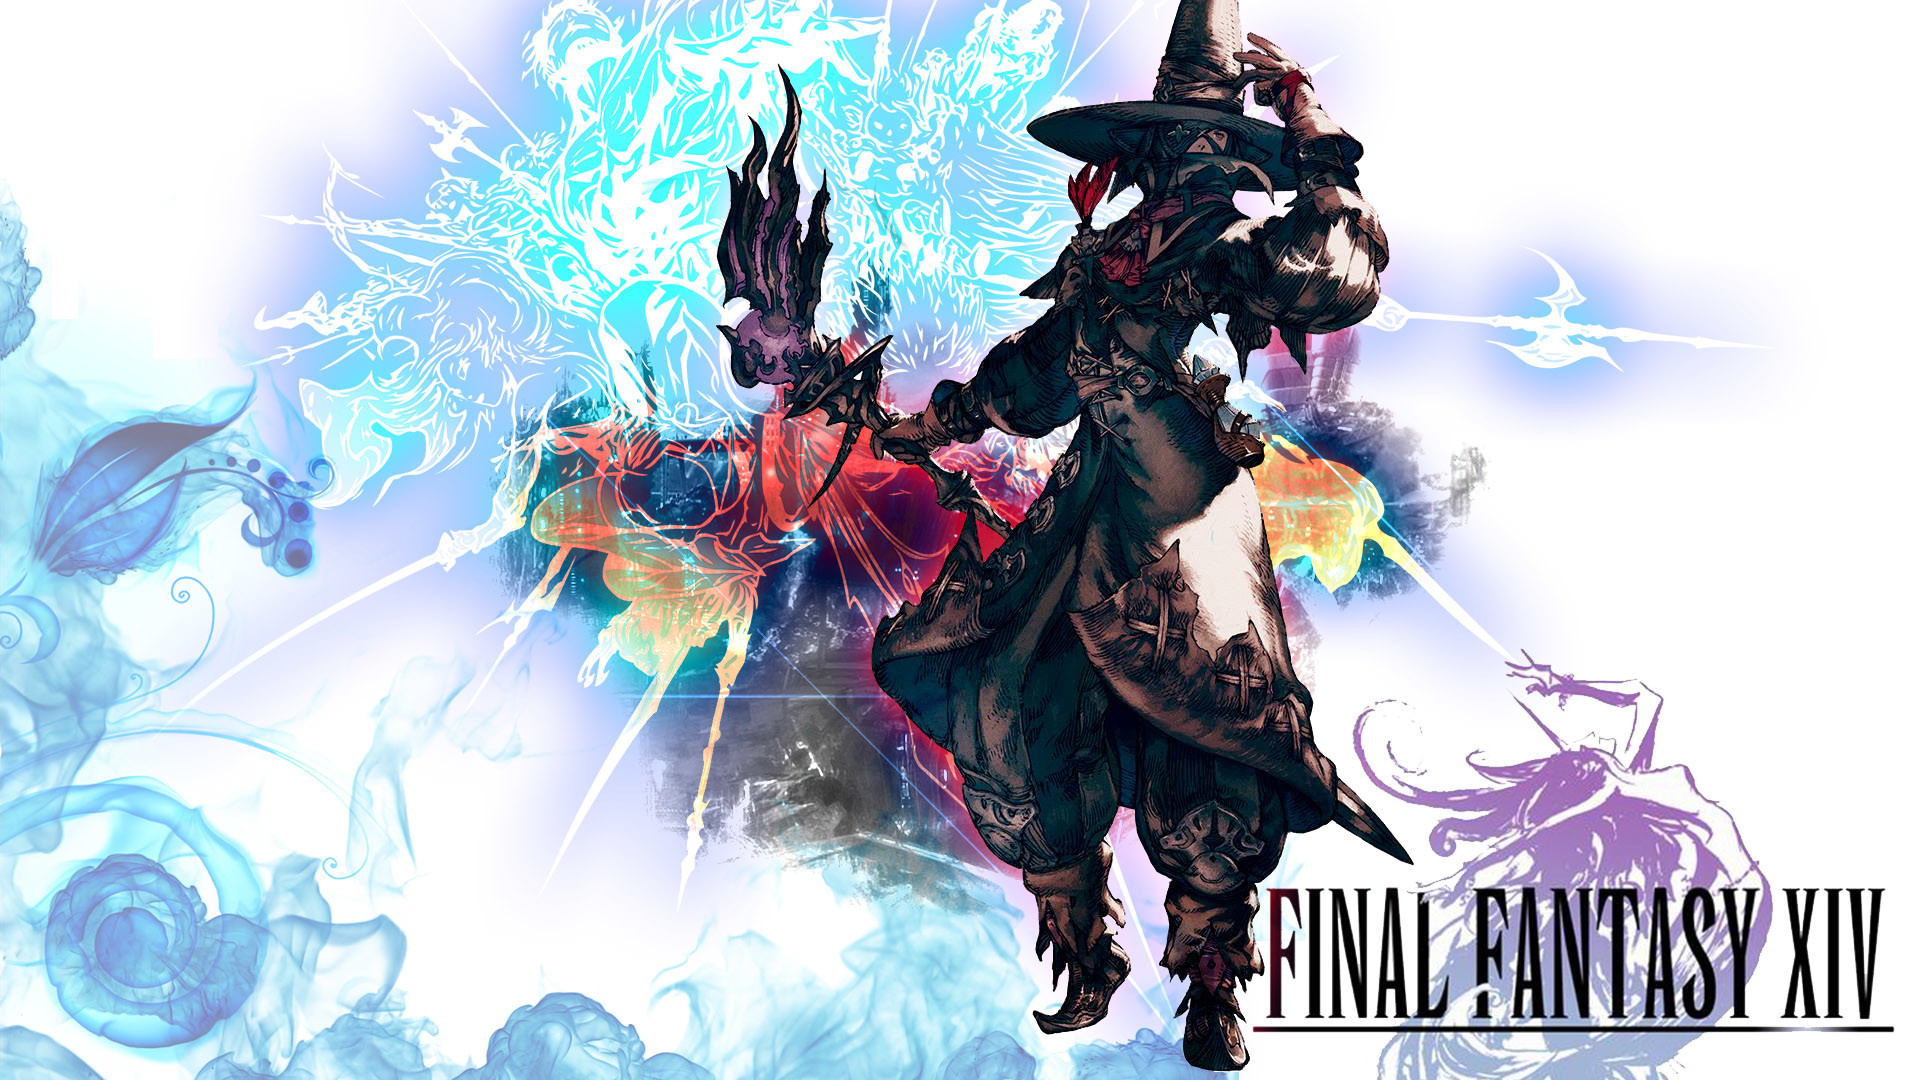 Final Fantasy XIV Wallpaper by MajinKhaN Final Fantasy XIV Wallpaper by MajinKhaN